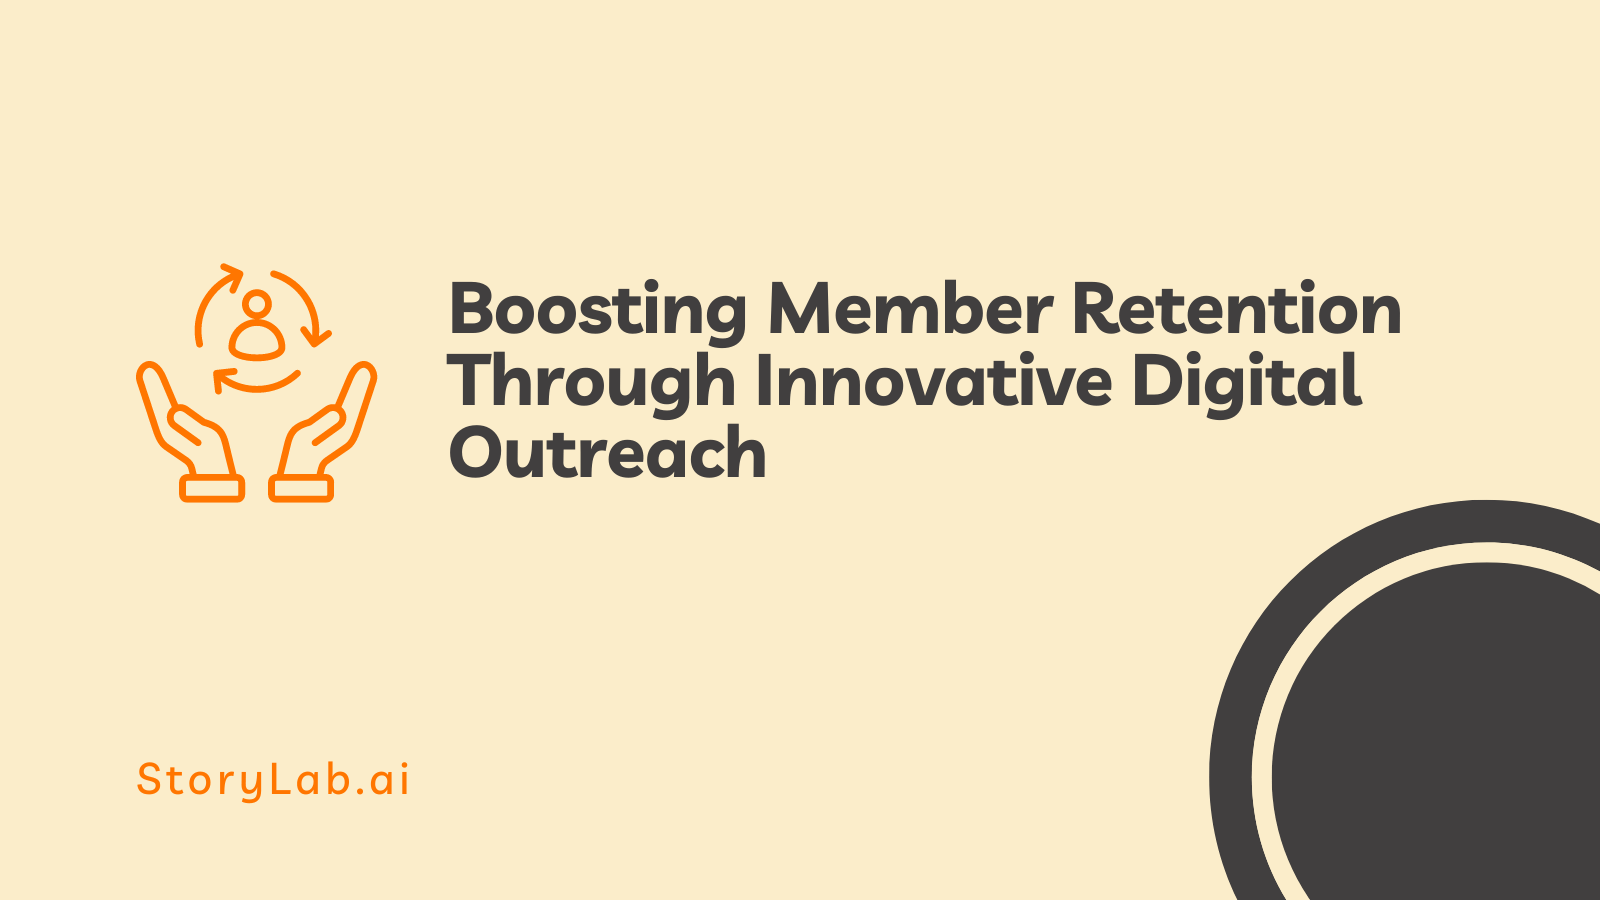 Aumentando a retenção de membros por meio de divulgação digital inovadora